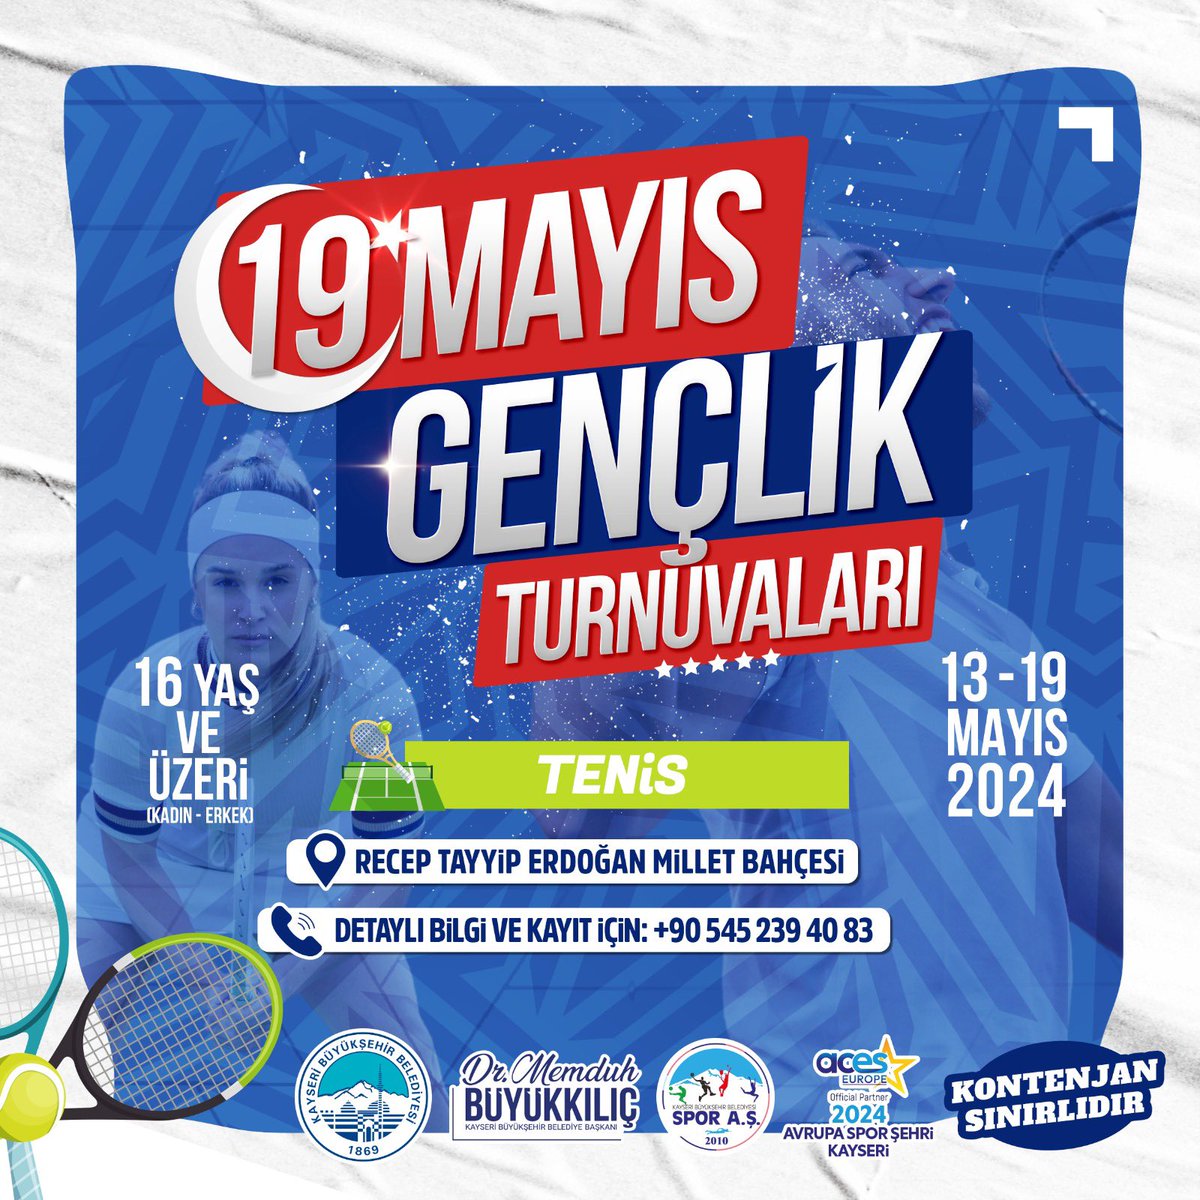 🇹🇷🎾Kayseri Büyükşehir Belediyesi Spor AŞ olarak 13-19 Mayıs 2024 tarihleri arasında Recep Tayyip Erdoğan Millet Bahçesinde düzenleyeceğimiz 19 Mayıs Gençlik Turnuvası Tenis kayıtları başladı 🎾🇹🇷 Detaylı Bilgi ve Kayıt İçin: 0 (545) 239 40 83